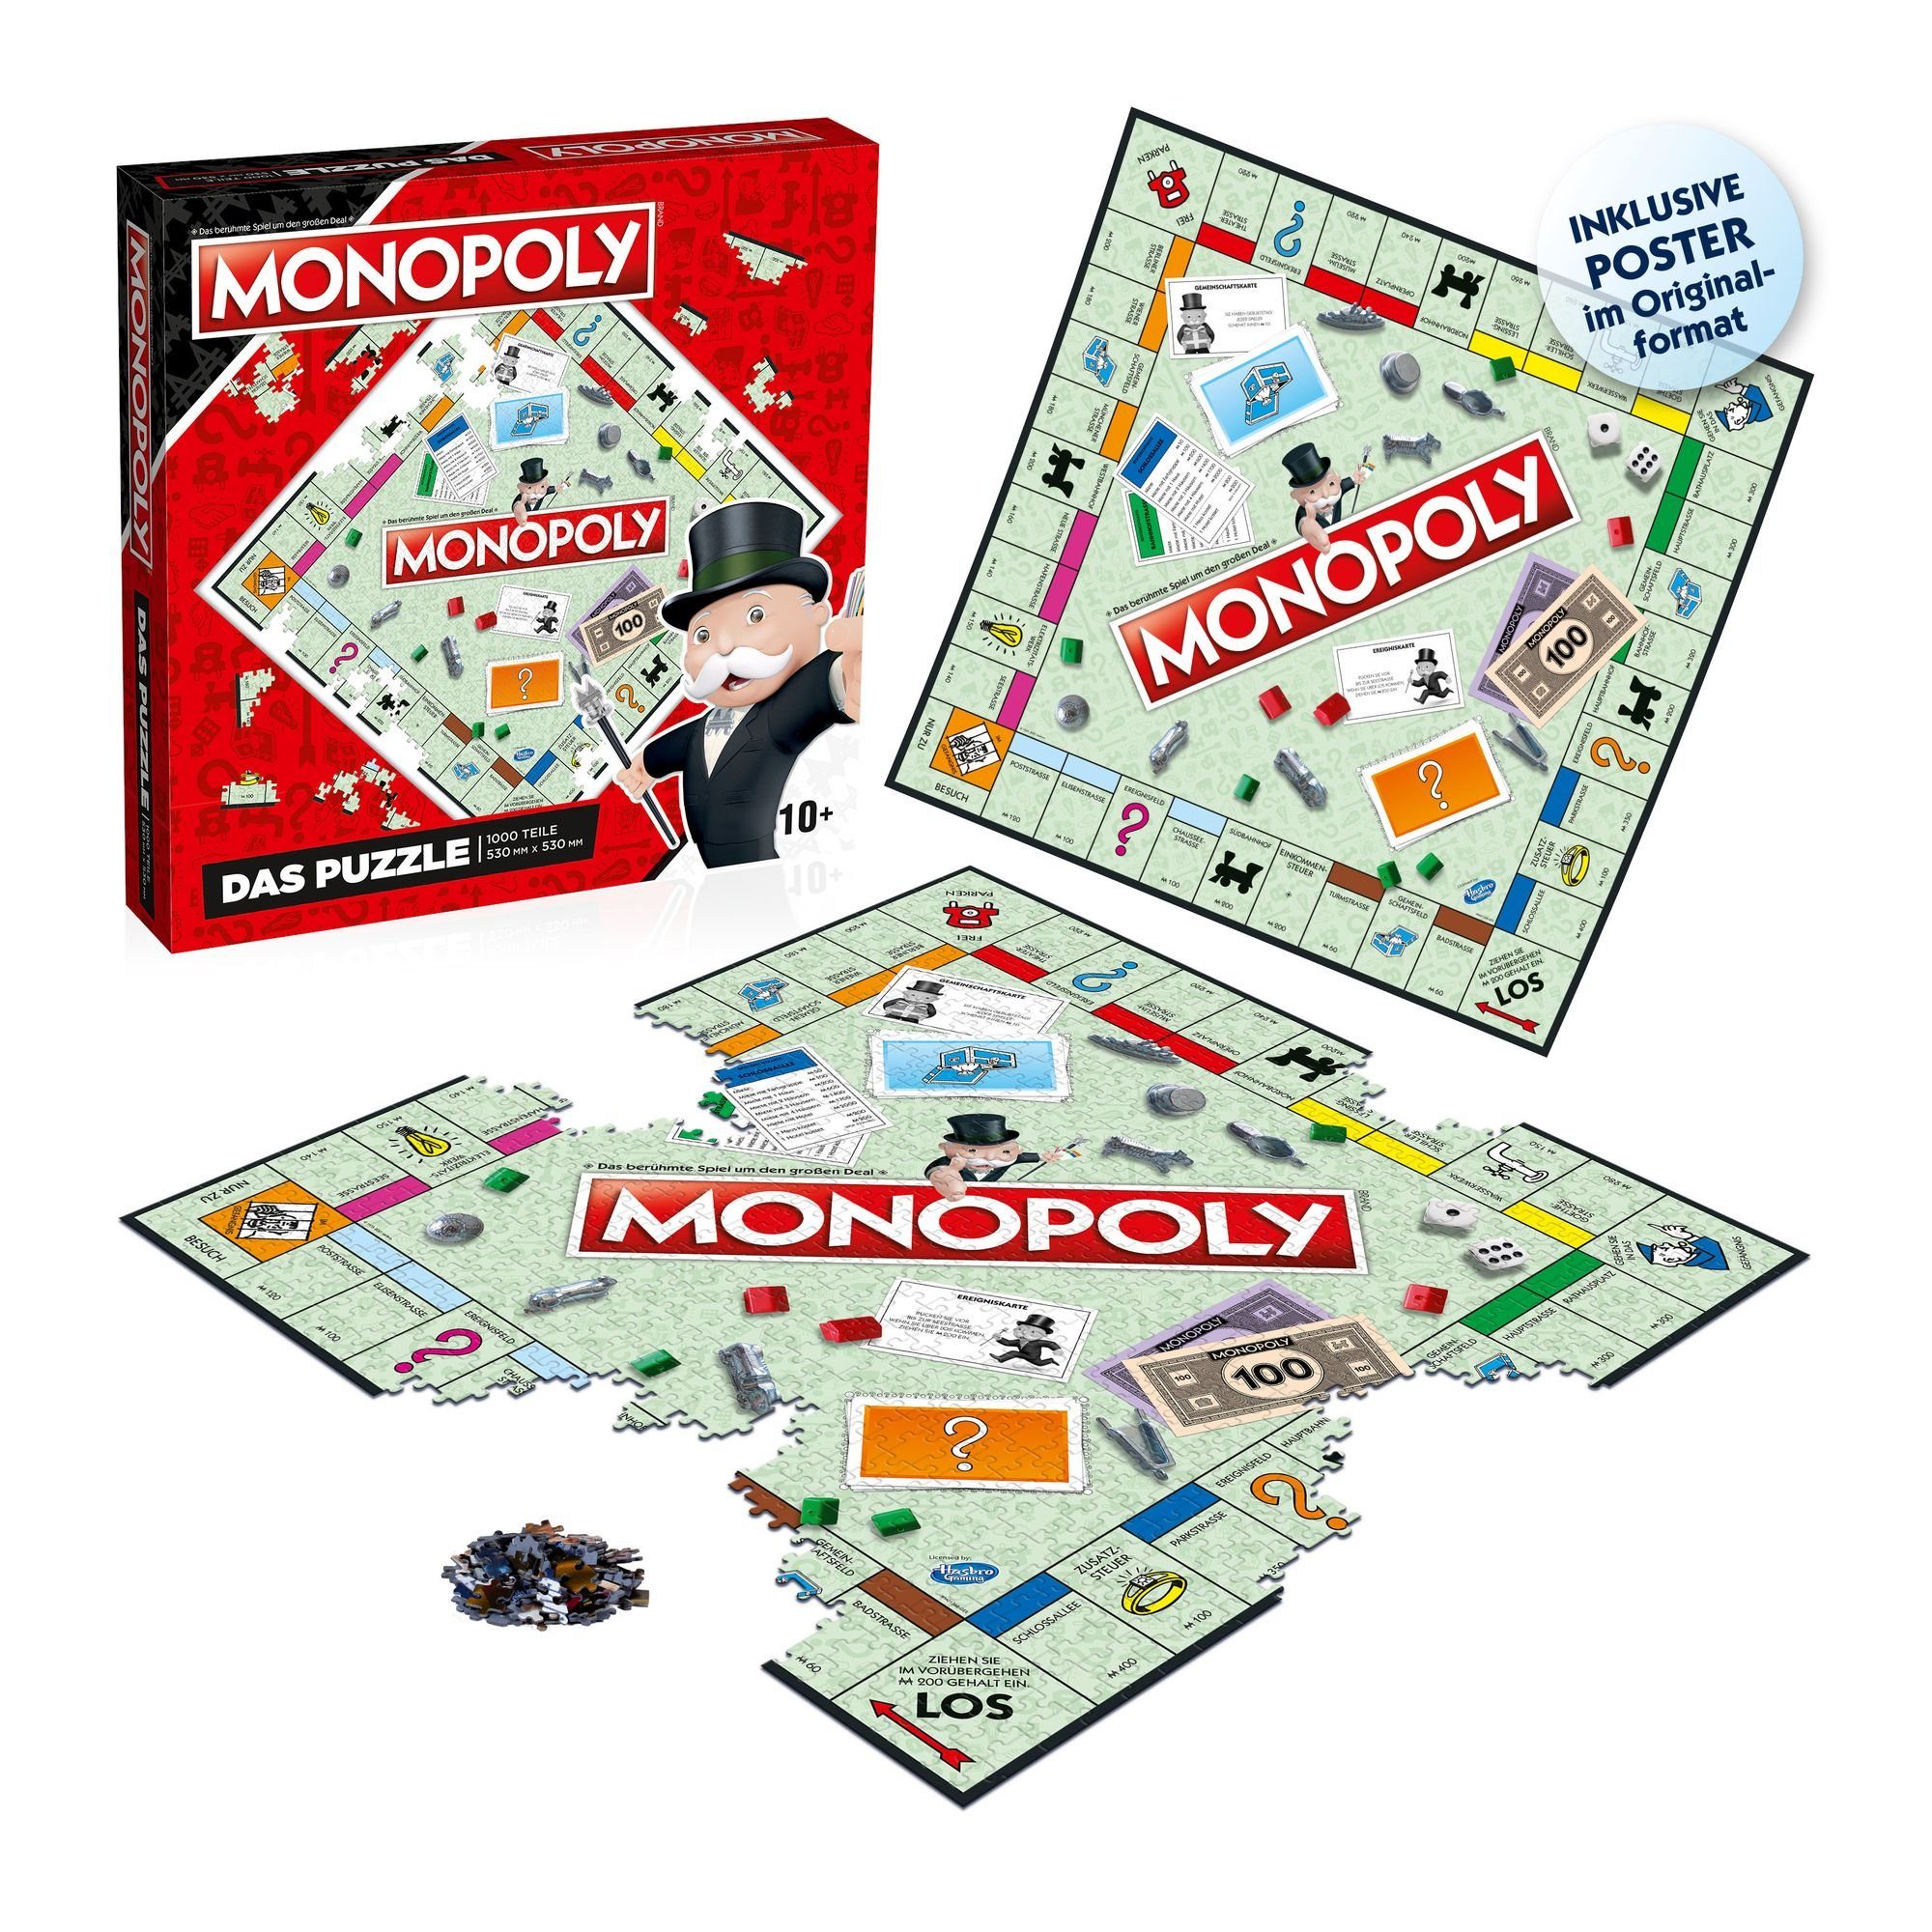 Das Monopoly Puzzleteile No. 1000 - Winning Puzzle 1000 Puzzle 9 Original Teile, Moves